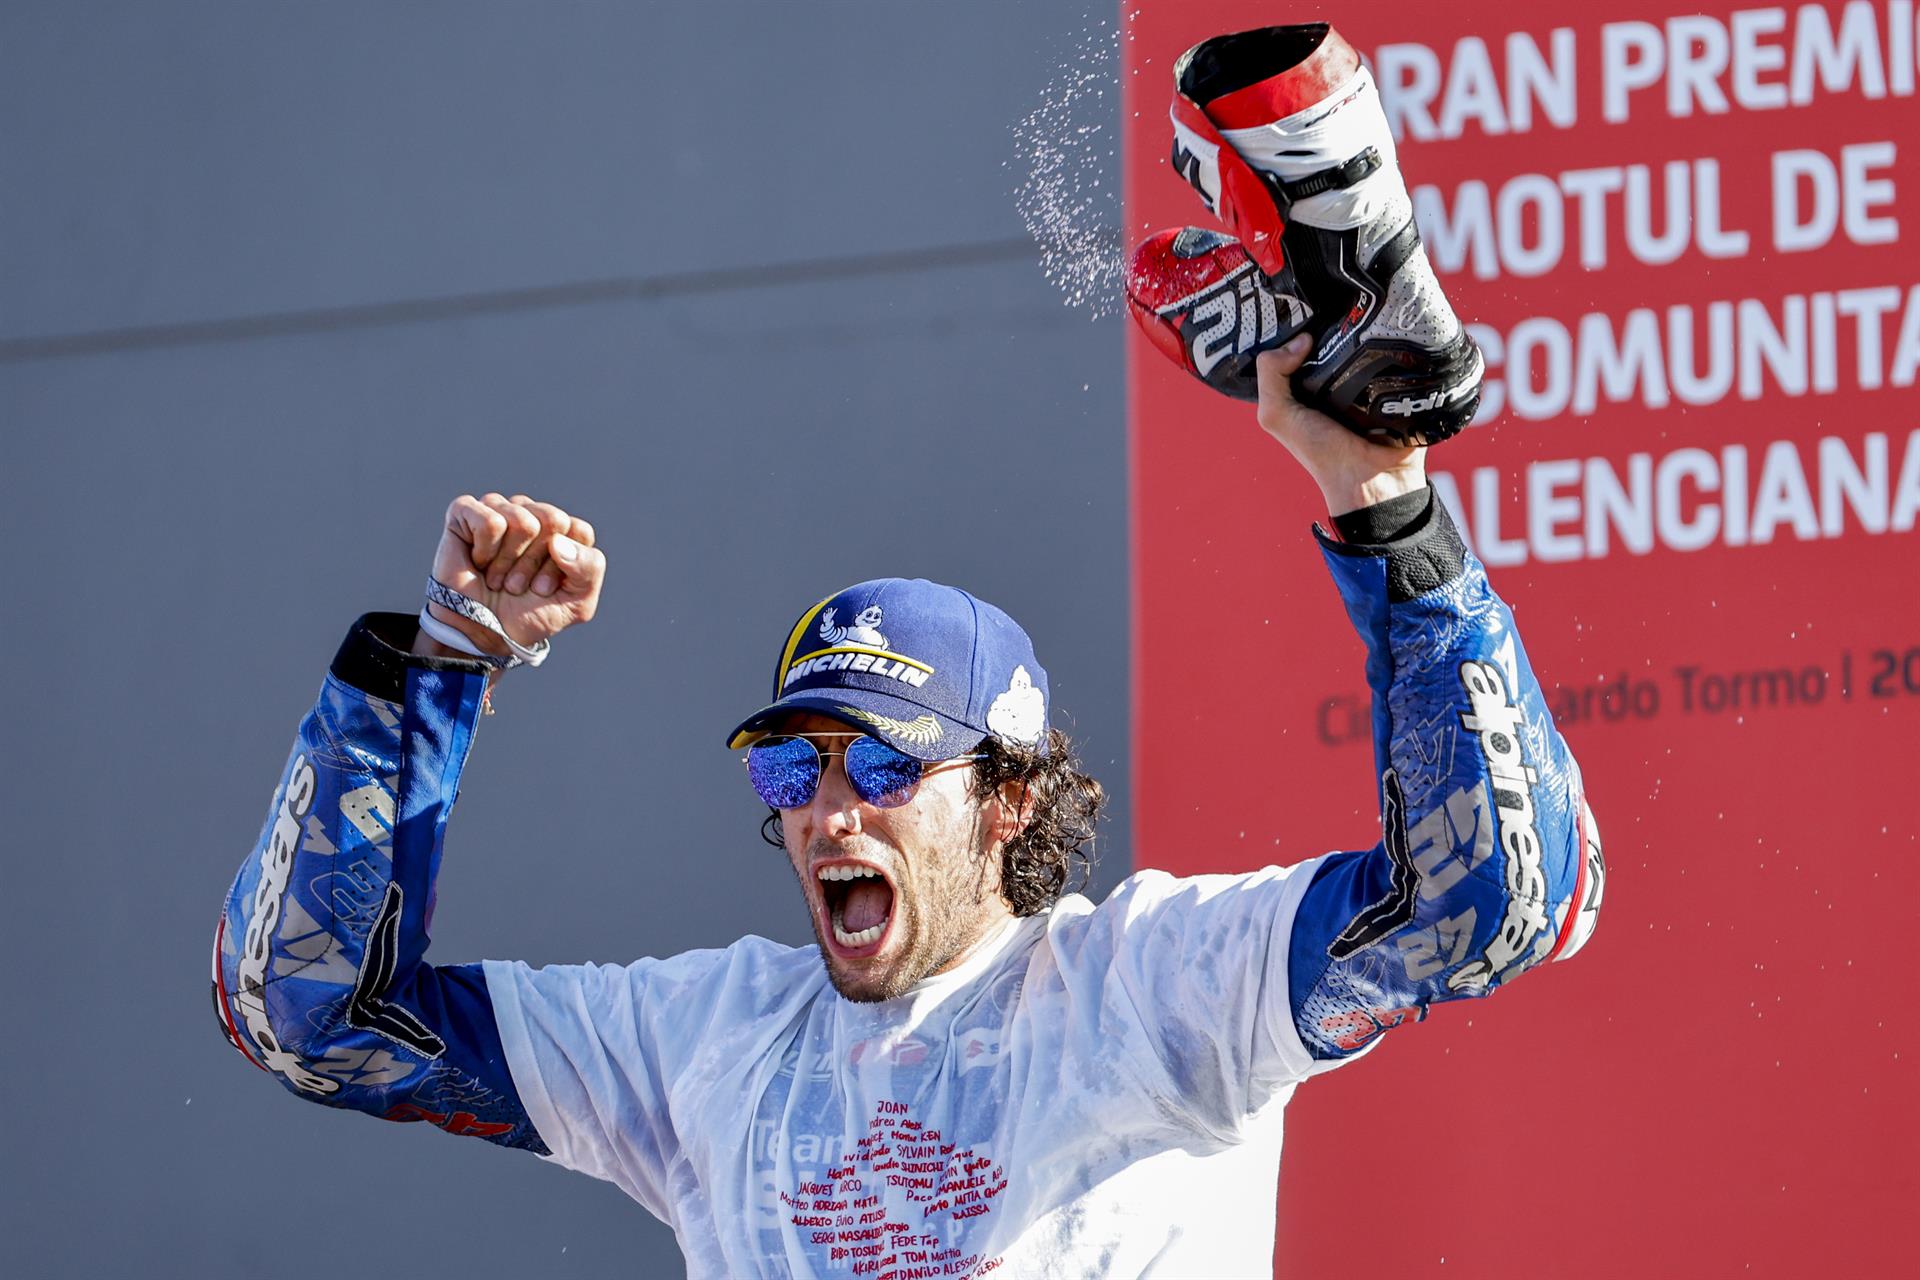 El español Alex Rins celebra su segunda victoria de la temporada al vencer el Gran Premio de la Comunidad Valenciana de MotoGp en el circuito "Ricardo Tormo" de Cheste. EFE/ Biel Aliño